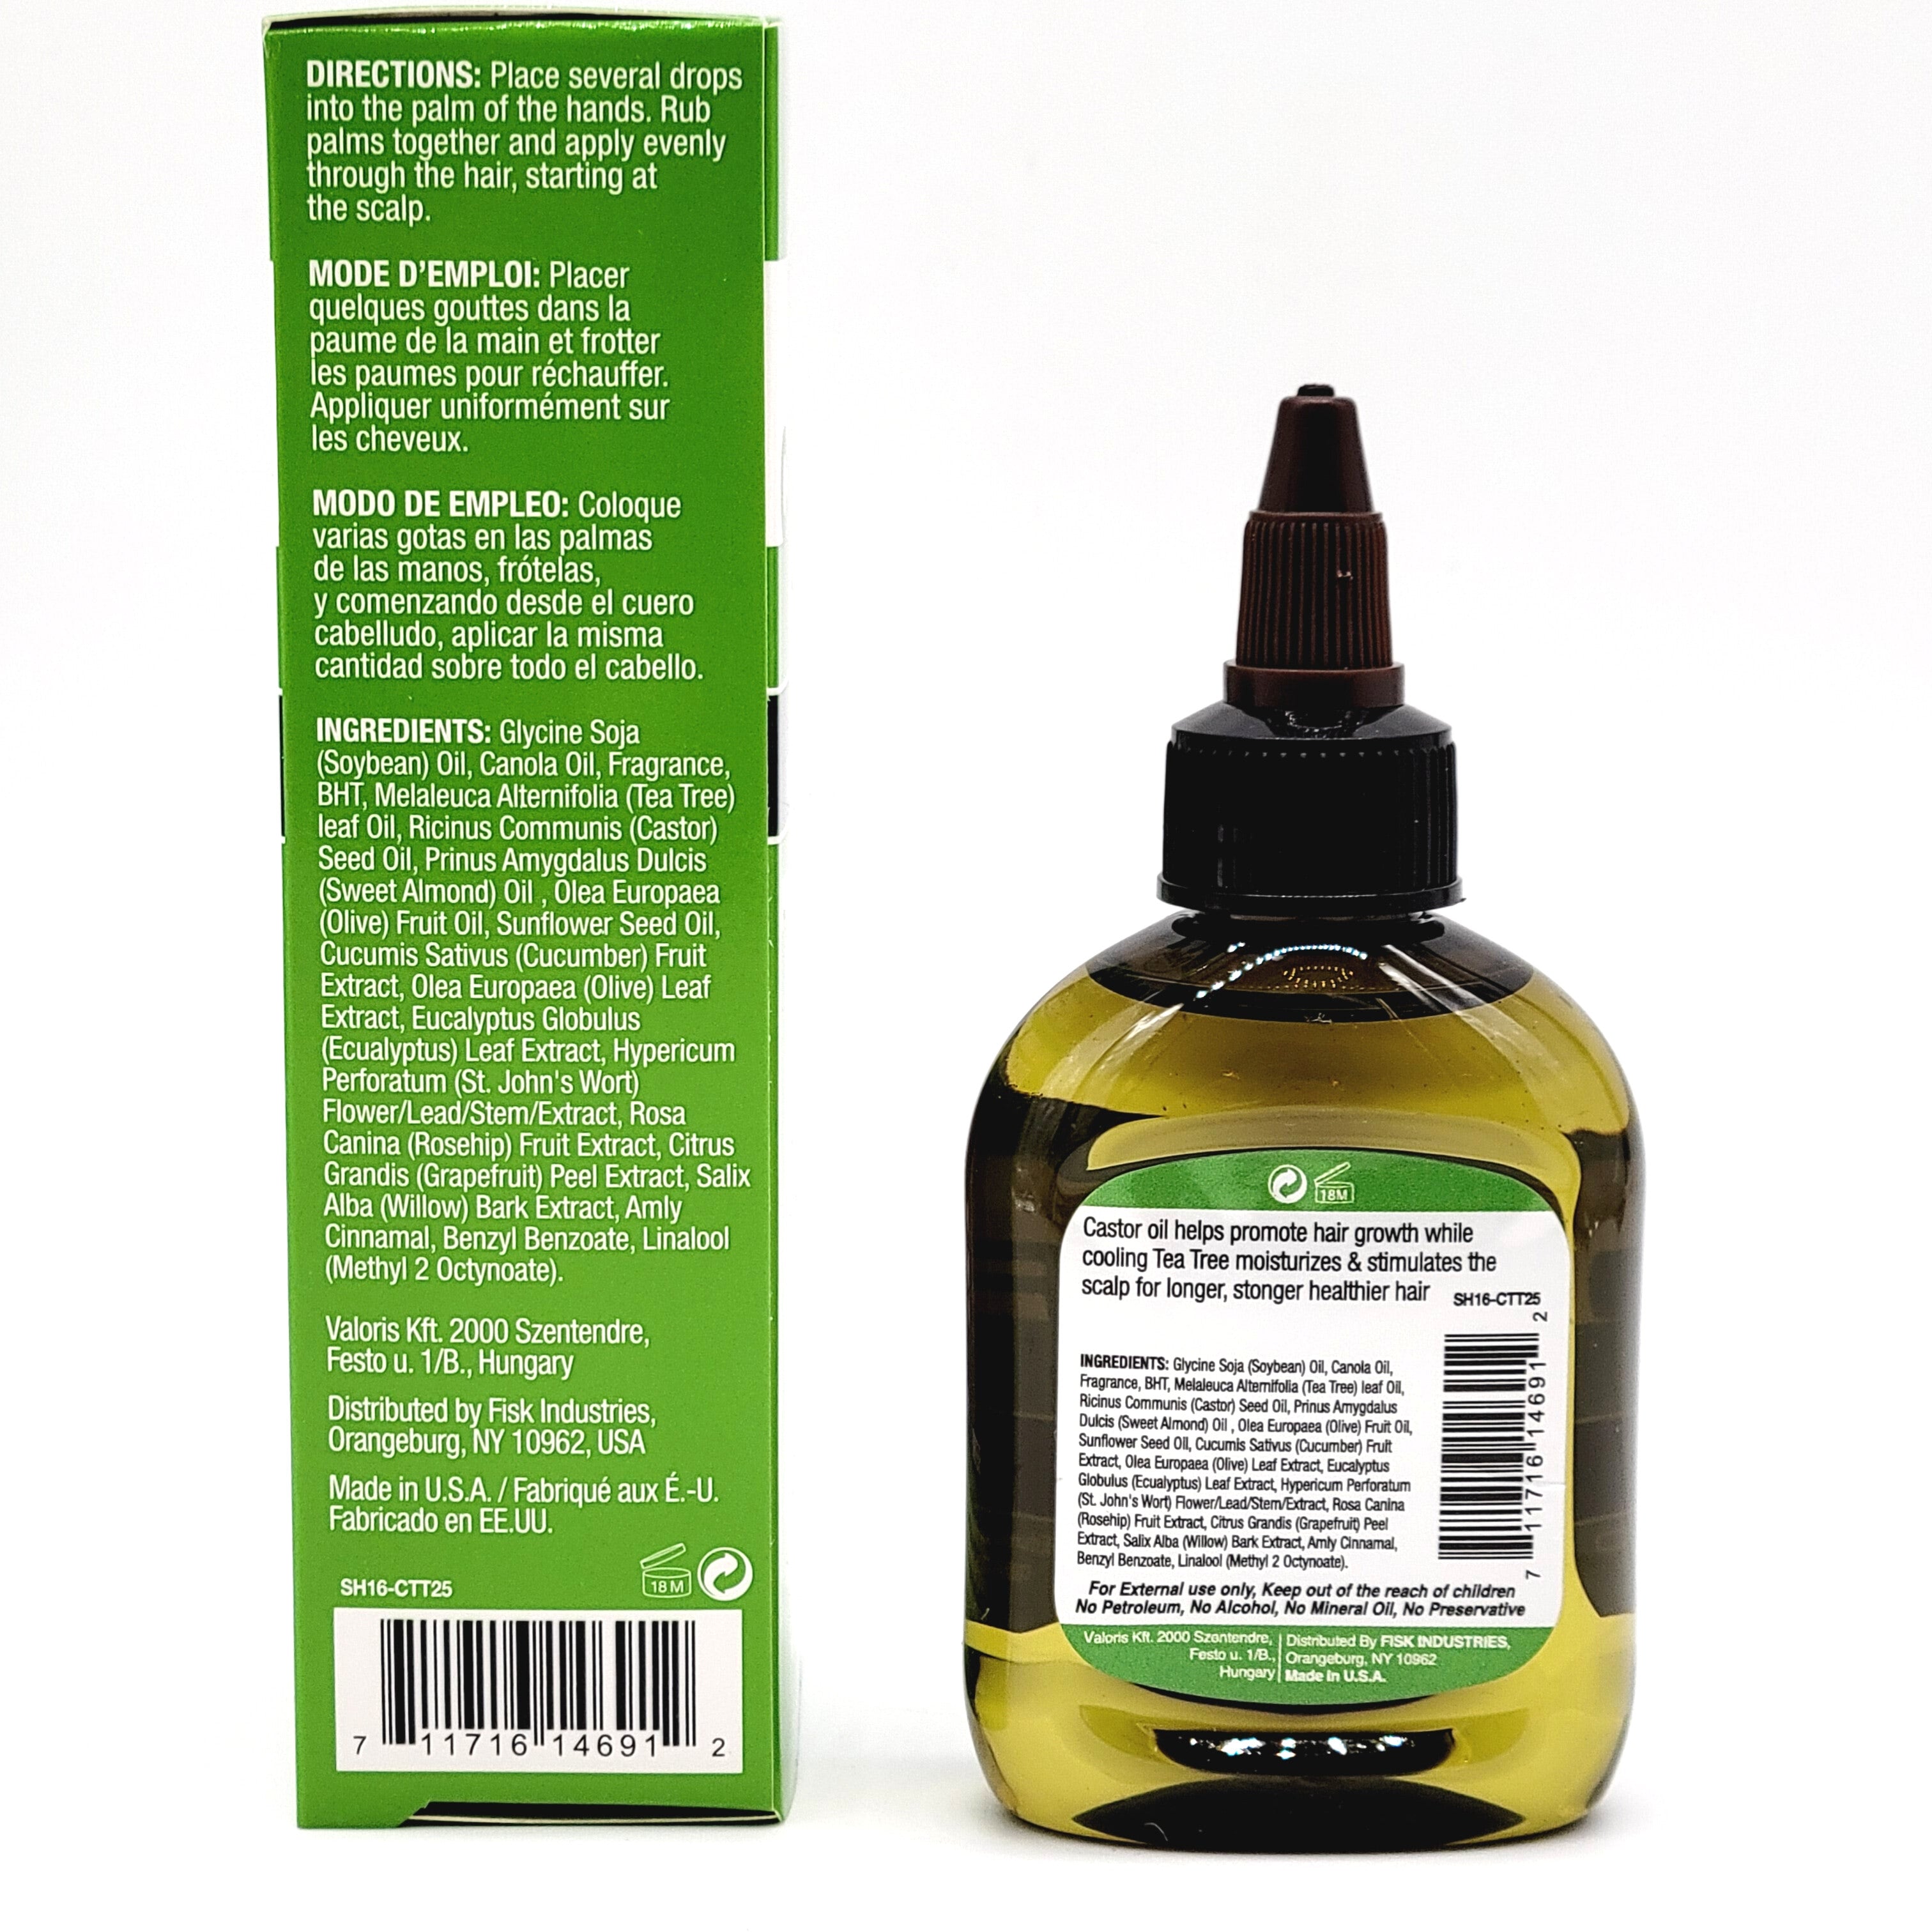 Difeel Premium Castor Plus Tea Tree - Pro-Growth + Scalp Care Premium Hair Oil 2.5 oz.